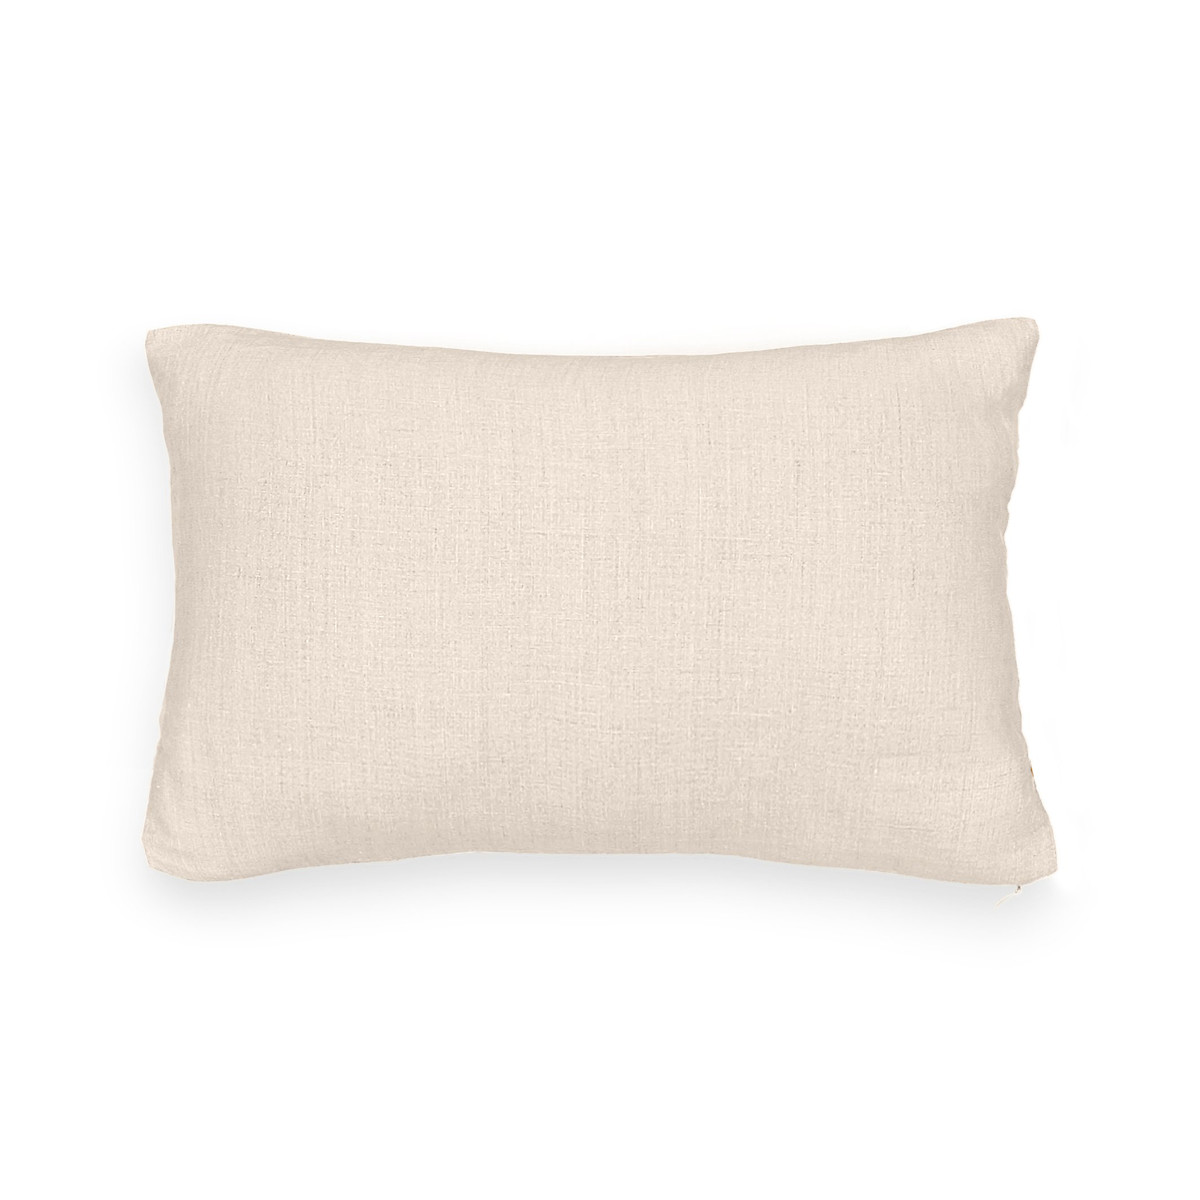 Чехол La Redoute На подушку-валик из стираного льна ONEGA 40 x 40 см бежевый, размер 40 x 40 см - фото 2